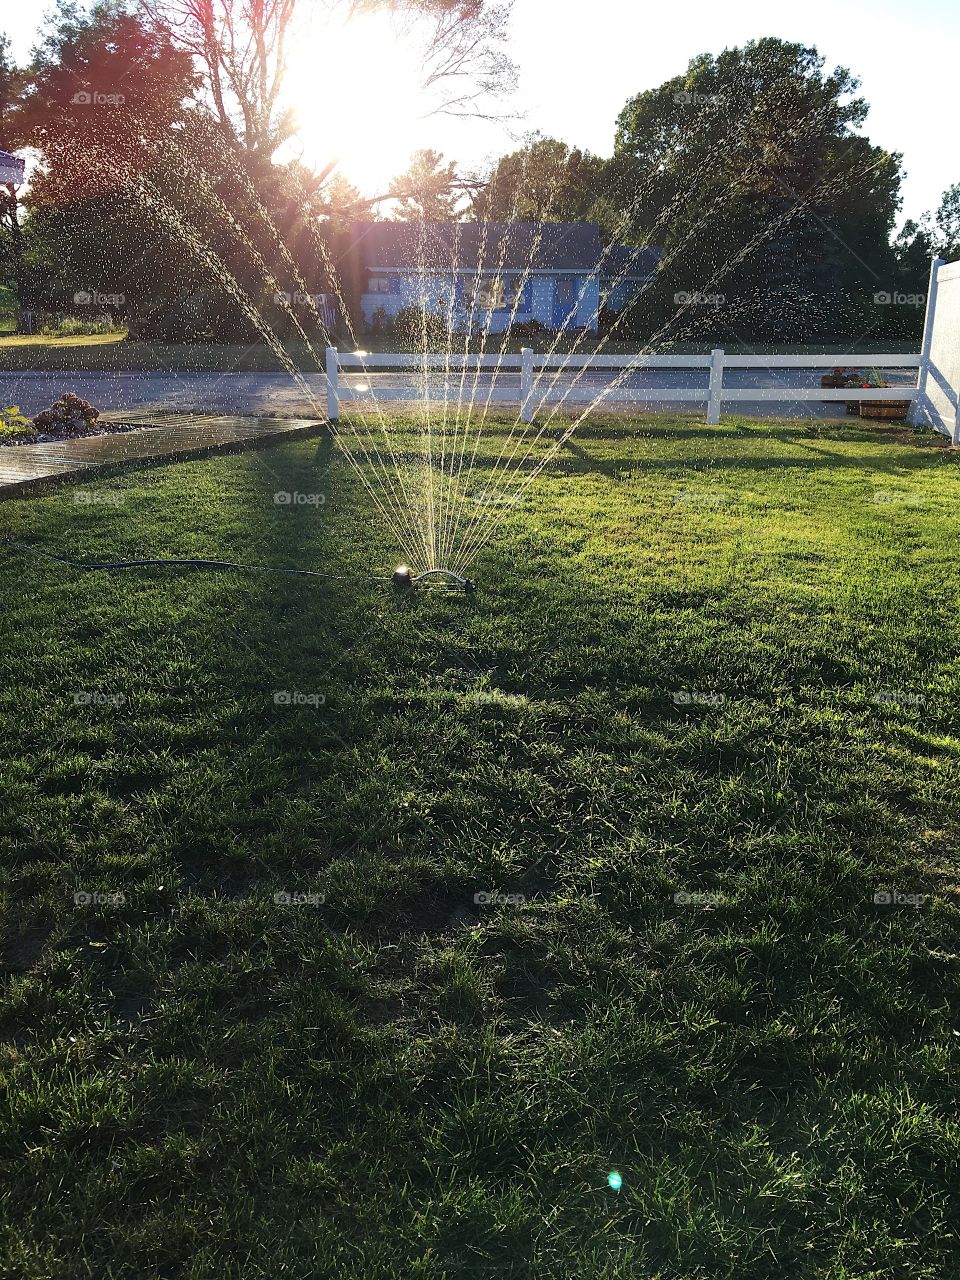 Sprinkler in the summer 